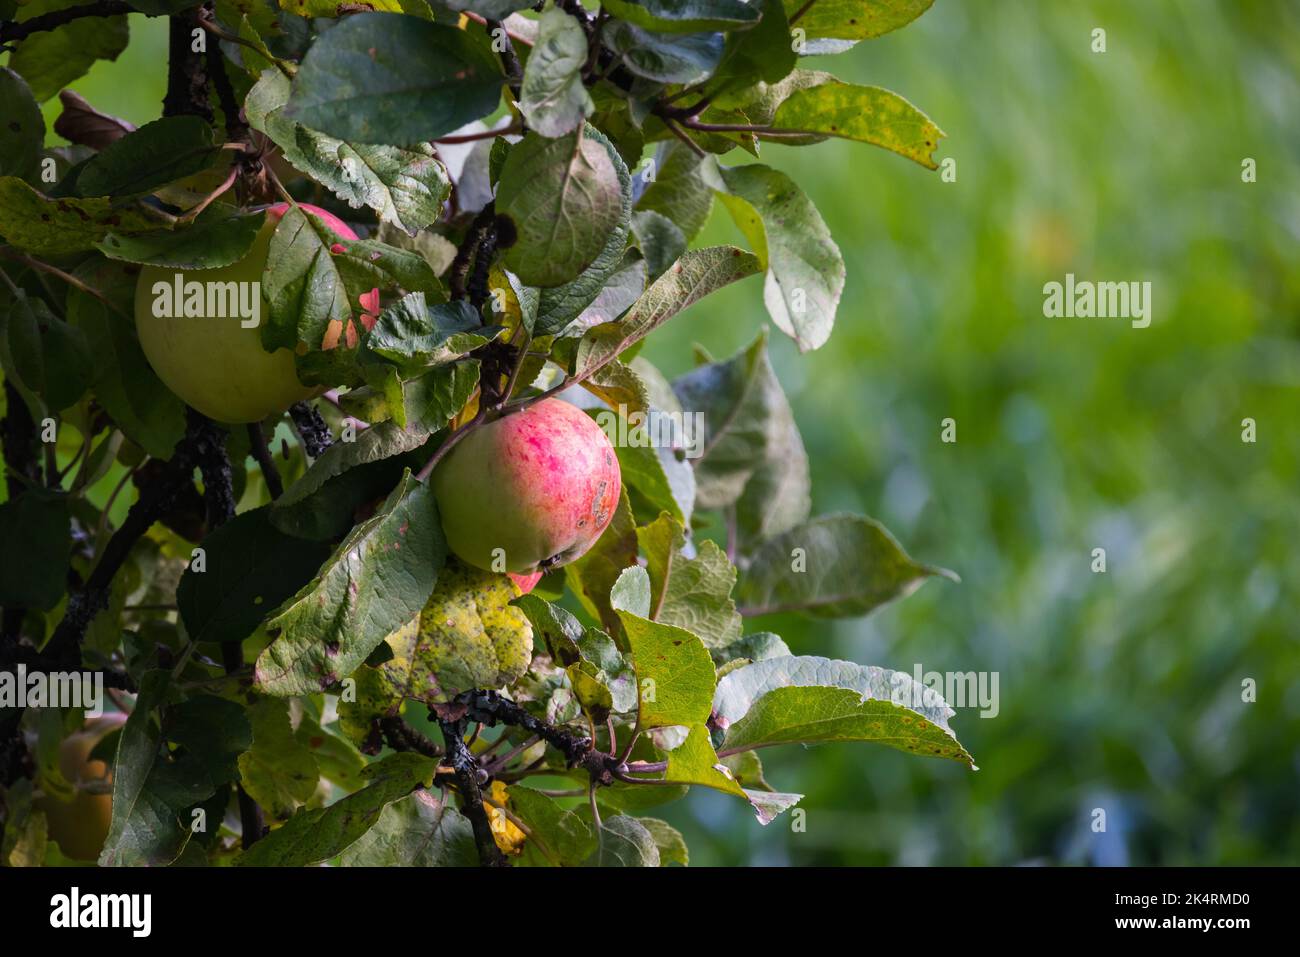 Les pommes vertes rouges sont sur une branche d'un pommier sur une journée ensoleillée, photo naturelle. Fond de nourriture biologique Banque D'Images